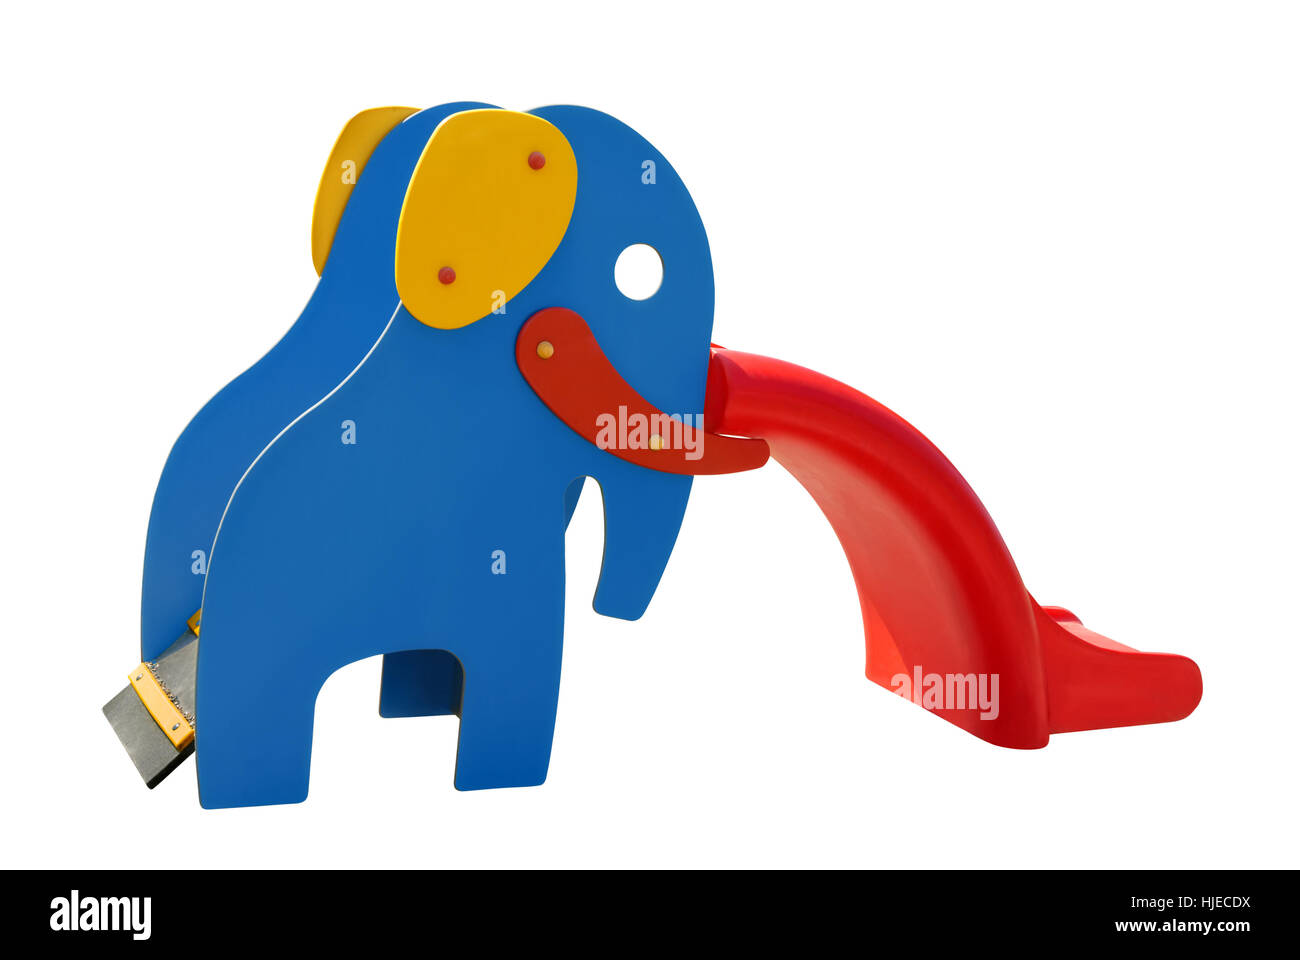 Bunte Rutsche in Form eines Elefanten in blau, rot und gelb, Freisteller Stock Photo